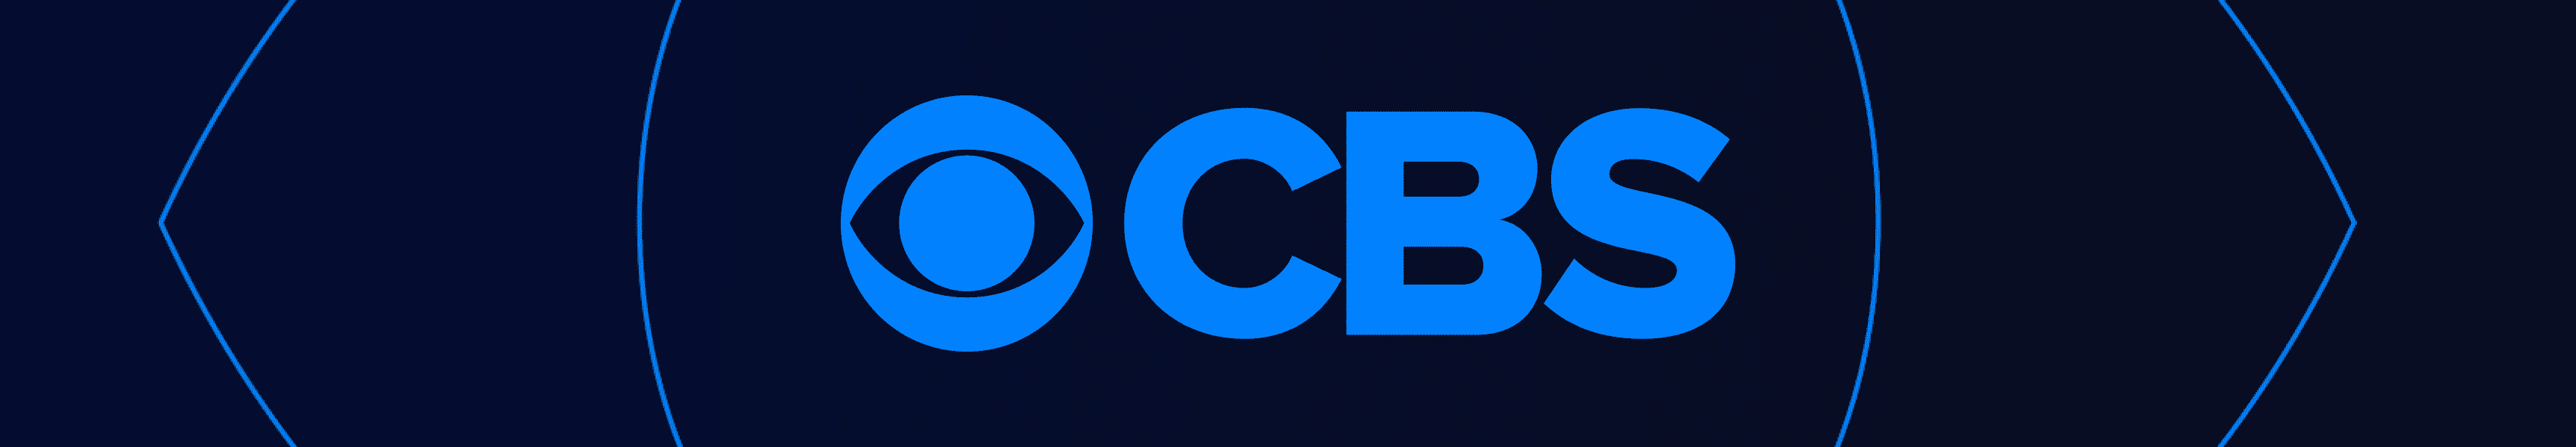 Accesorios de barra de CBS